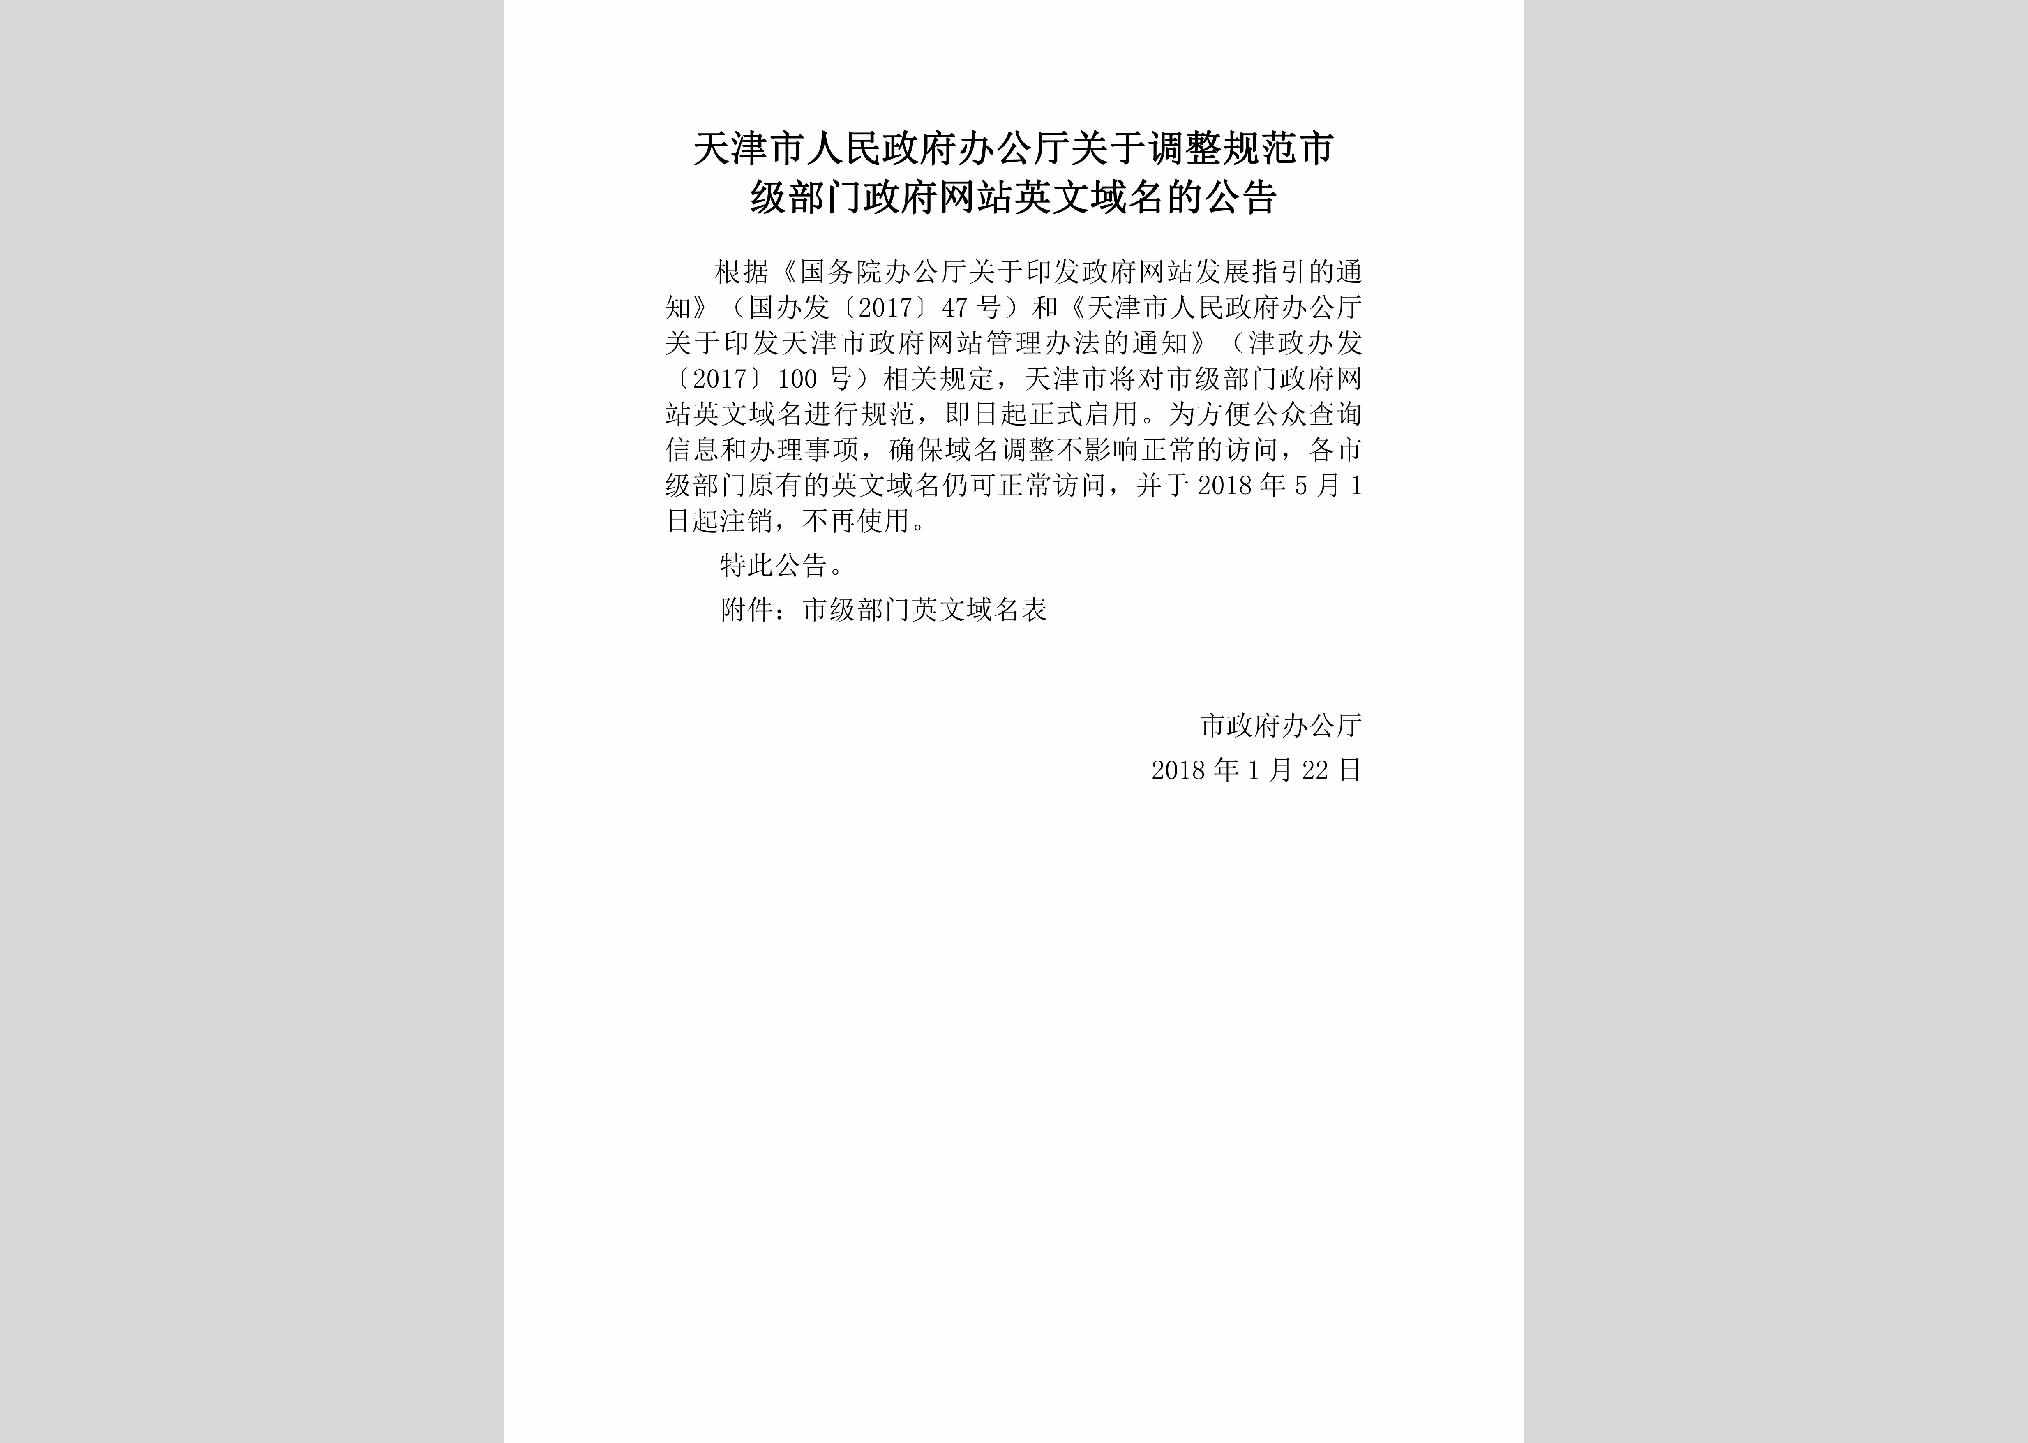 TJ-TZZFWZYM-2018：天津市人民政府办公厅关于调整规范市级部门政府网站英文域名的公告